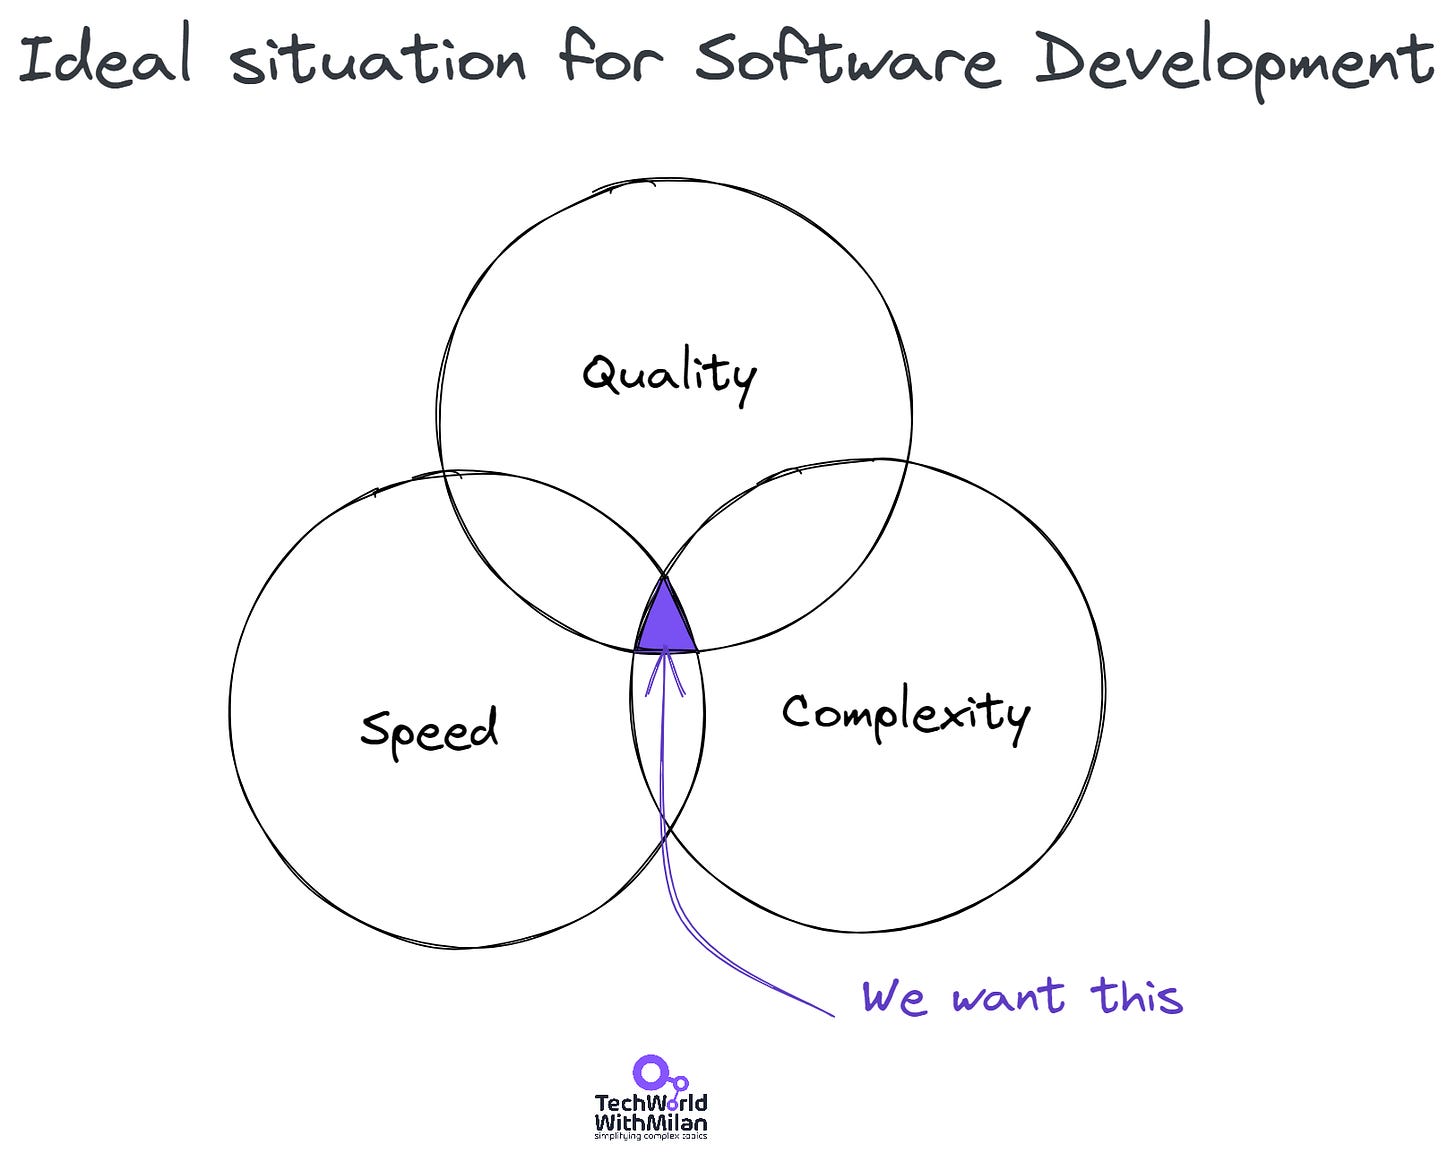 软件开发的理想情况